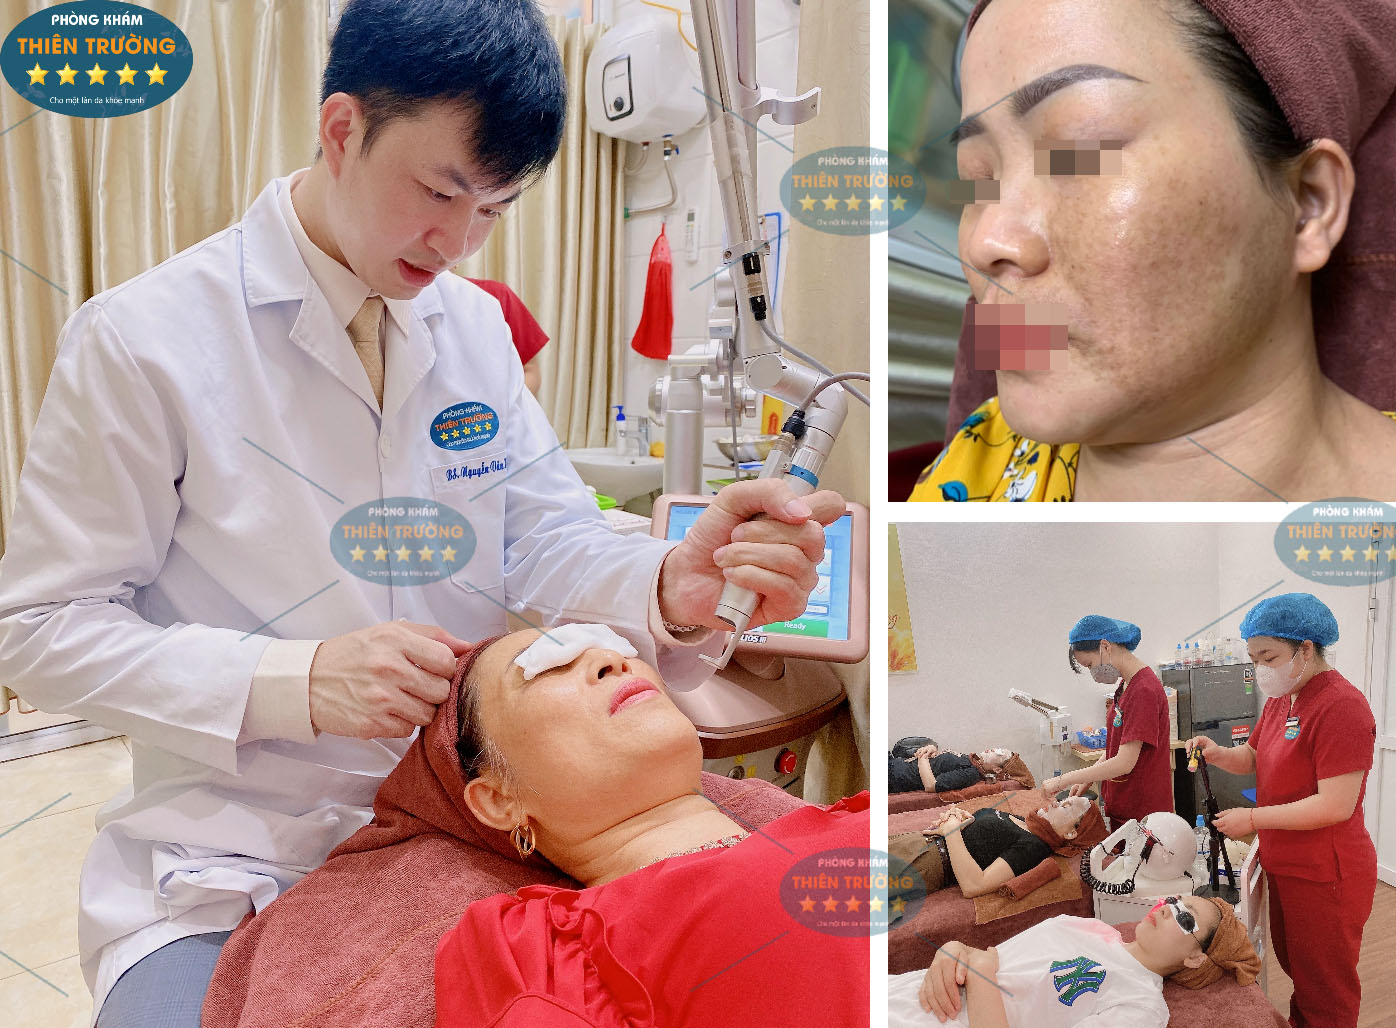 Hình ảnh: Thạc sĩ- Bác sĩ Nguyễn Văn Hoàn đang hỗ trợ điều trị nám- tàn nhang cho bệnh nhân.